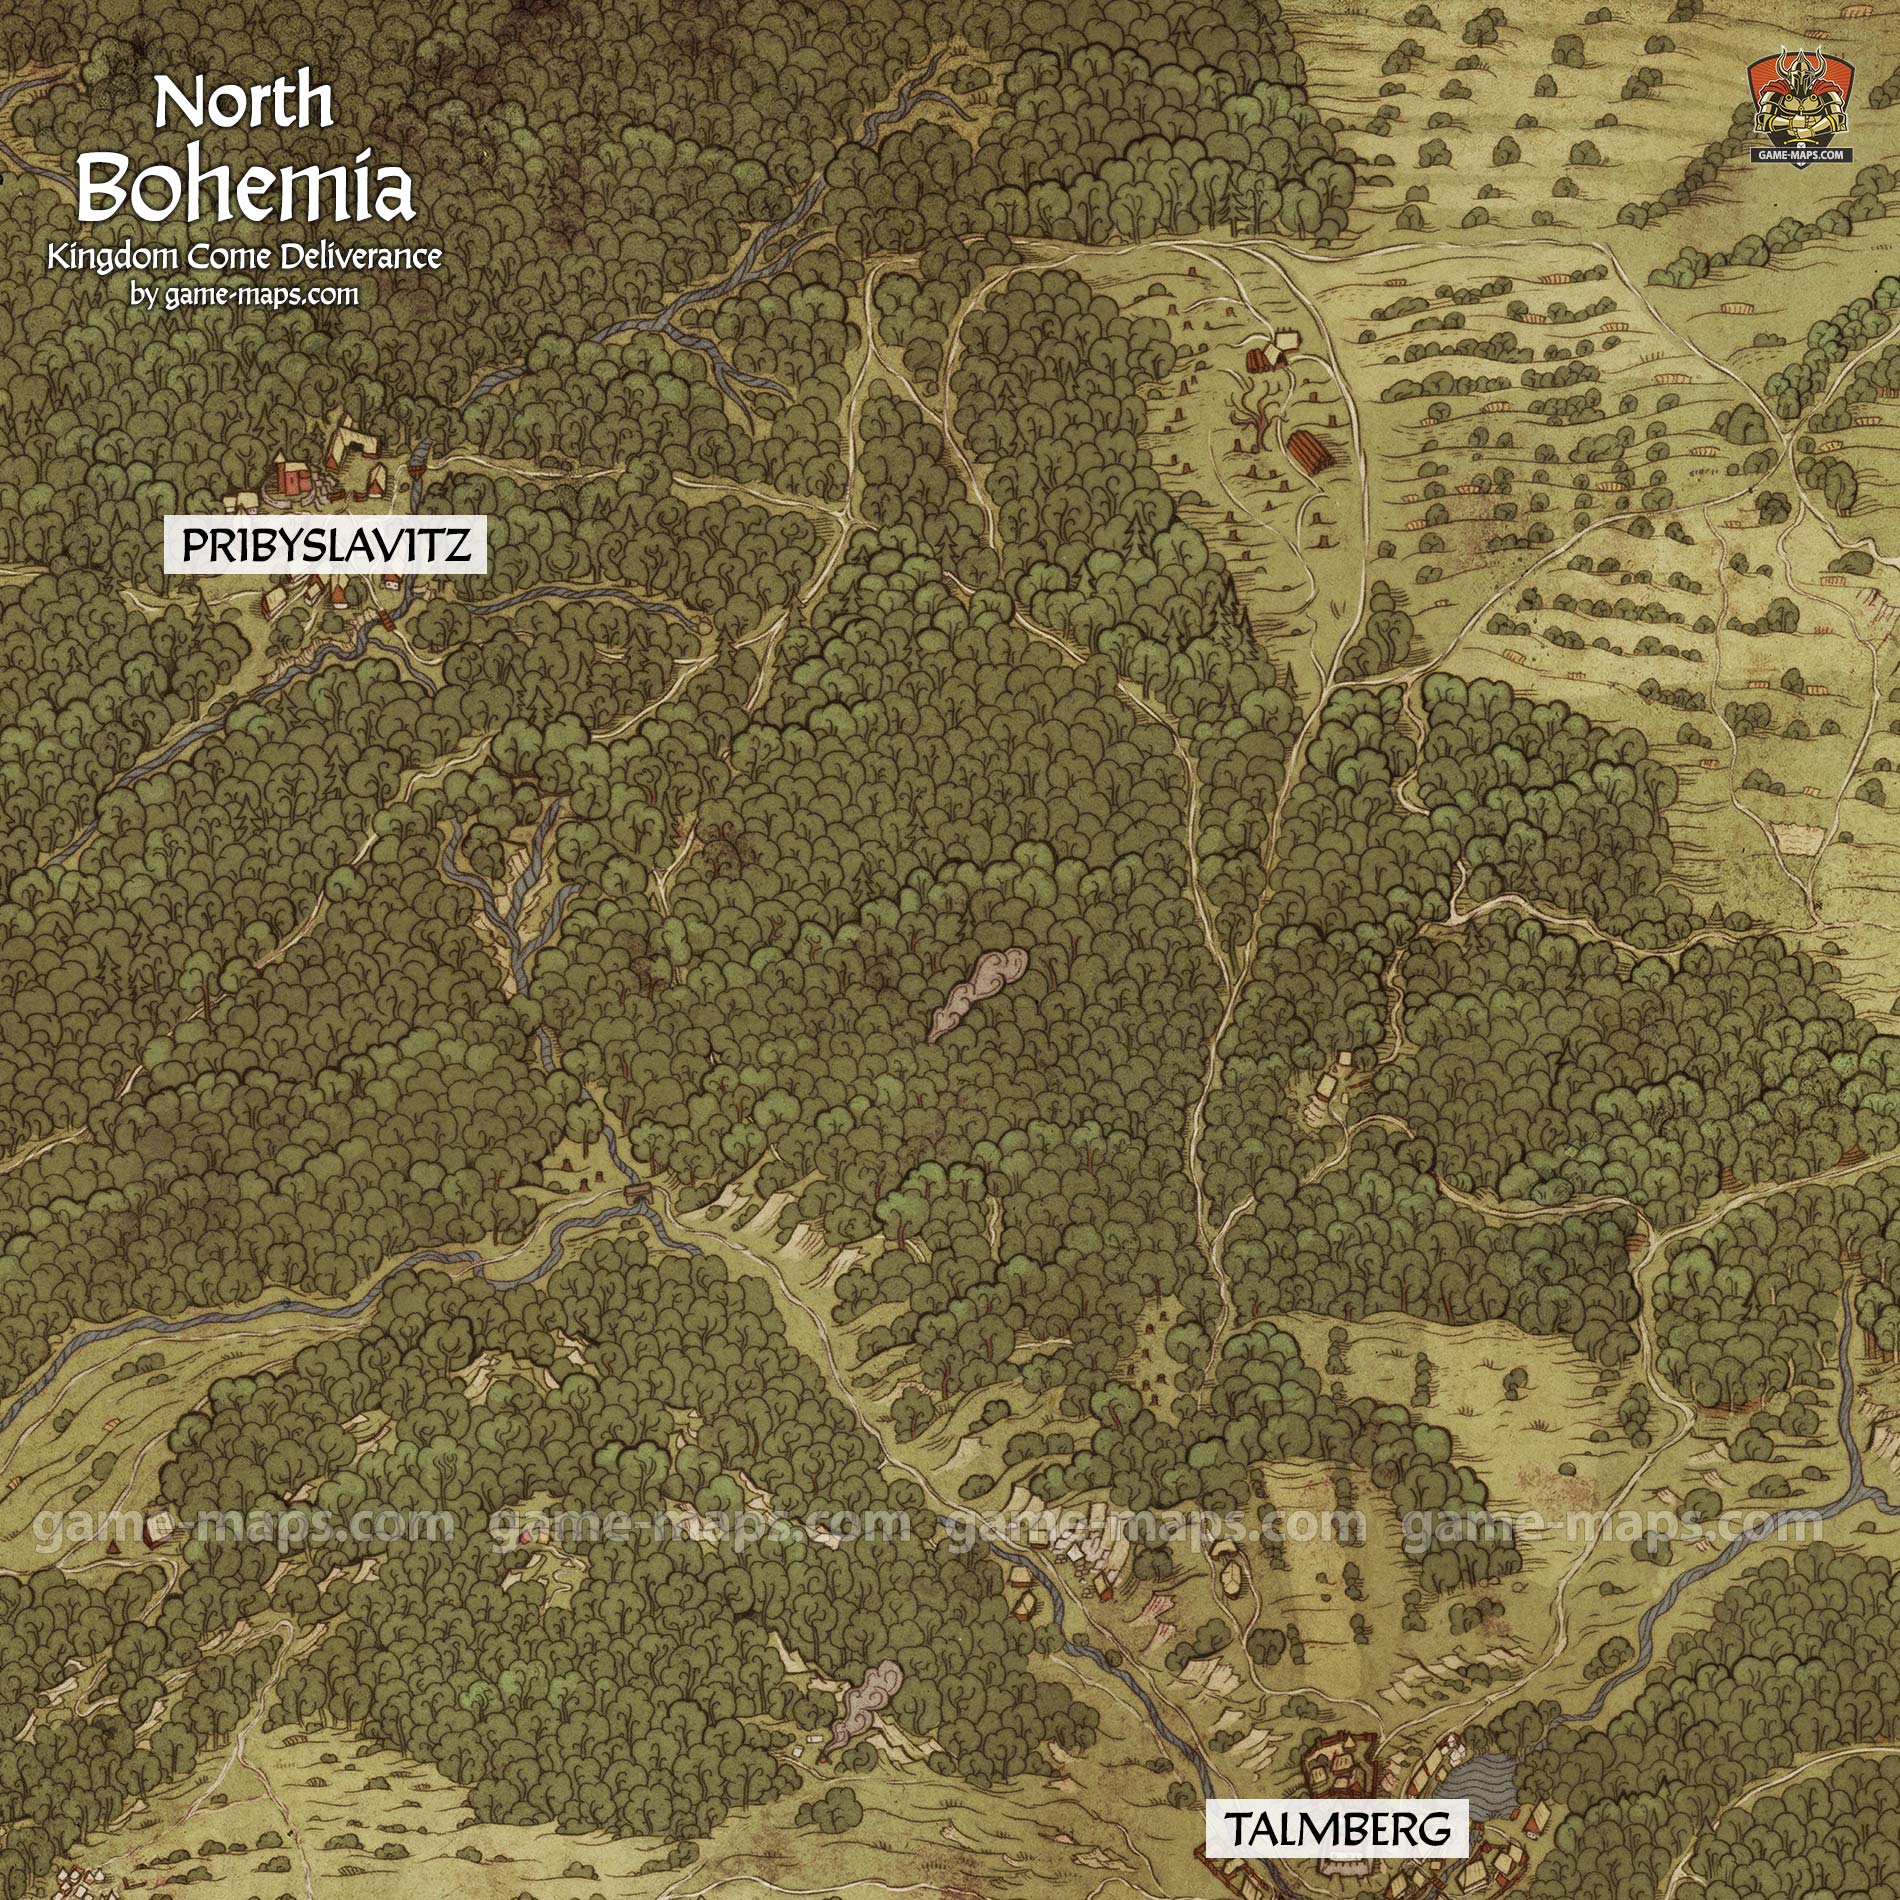 North Bohemia Map for Kingdom Come Deliverance